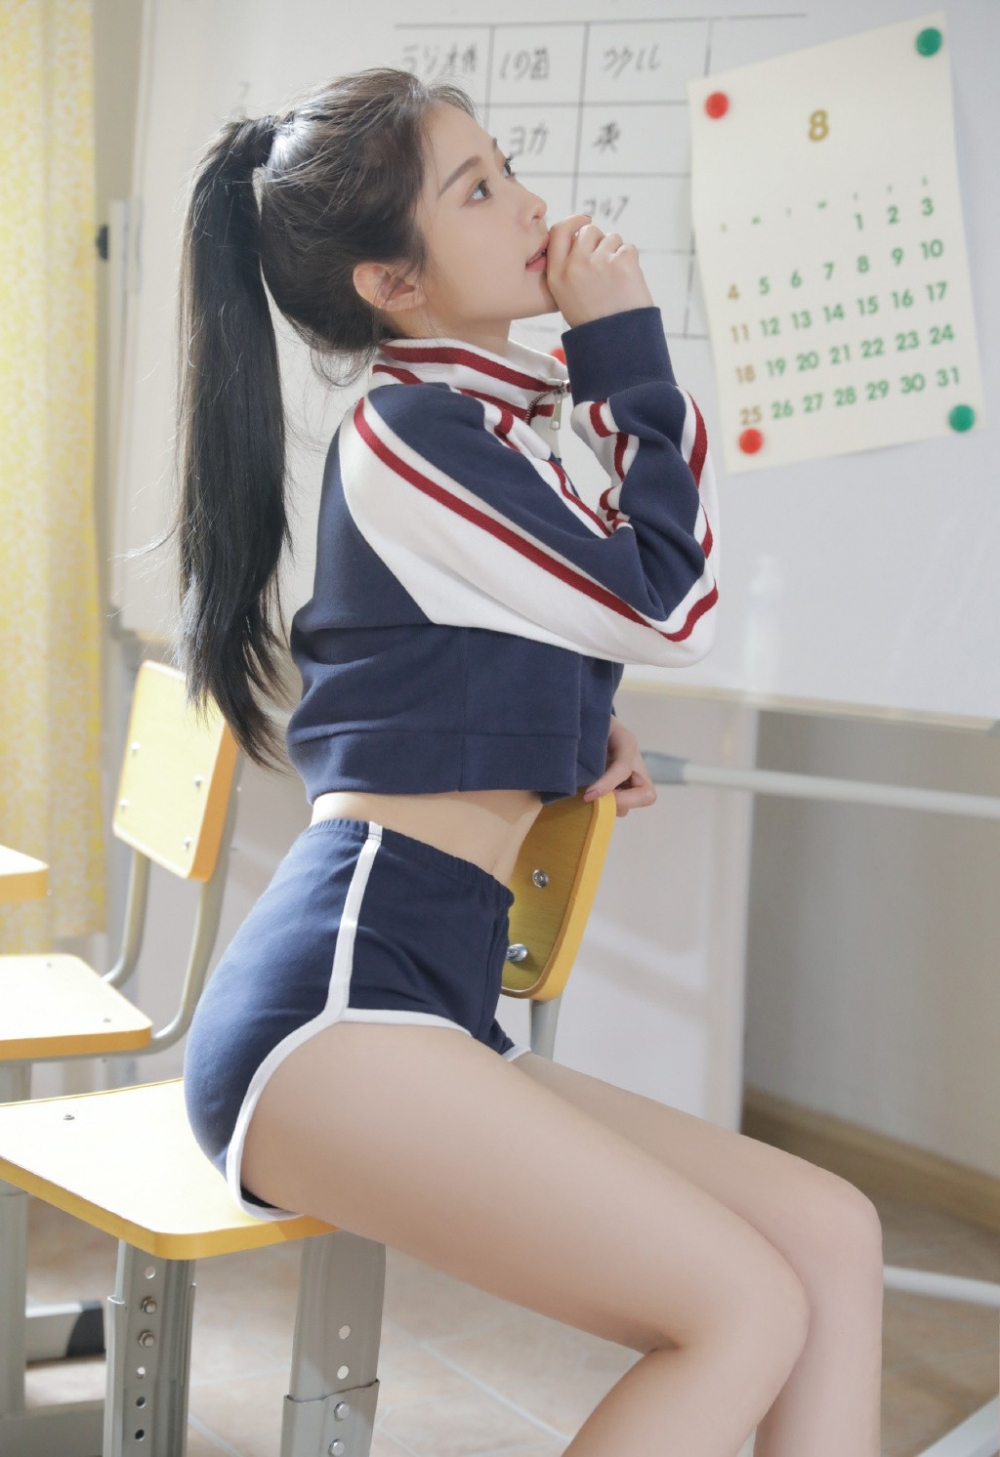 高马尾美女学生妹休闲运动服细腰长腿教室艺术照